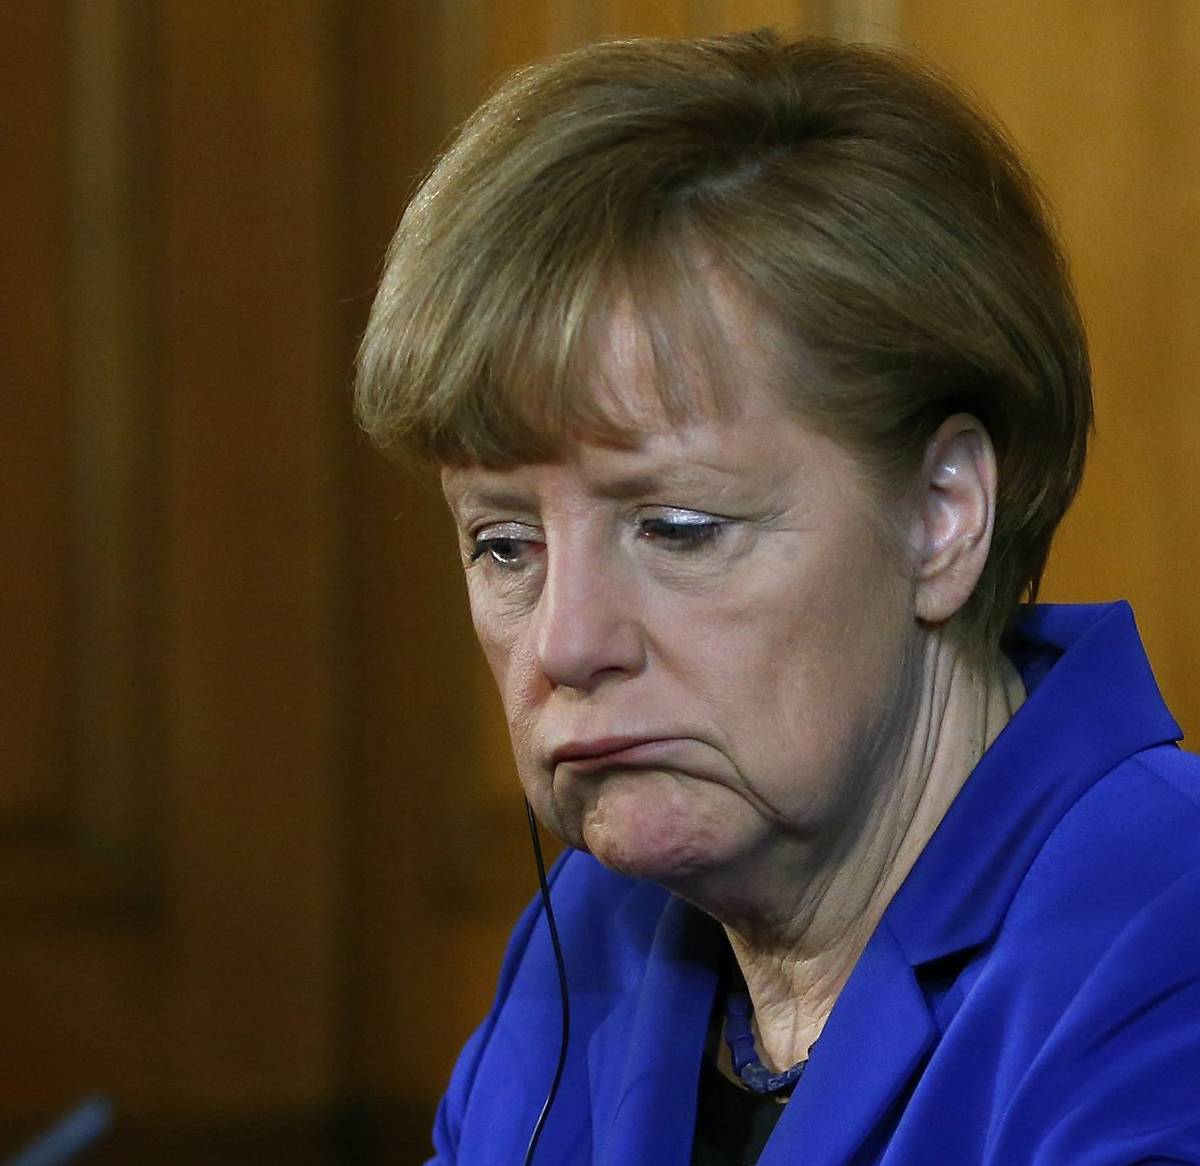 Wbur: Меркель выиграла, так почему немцы не празднуют